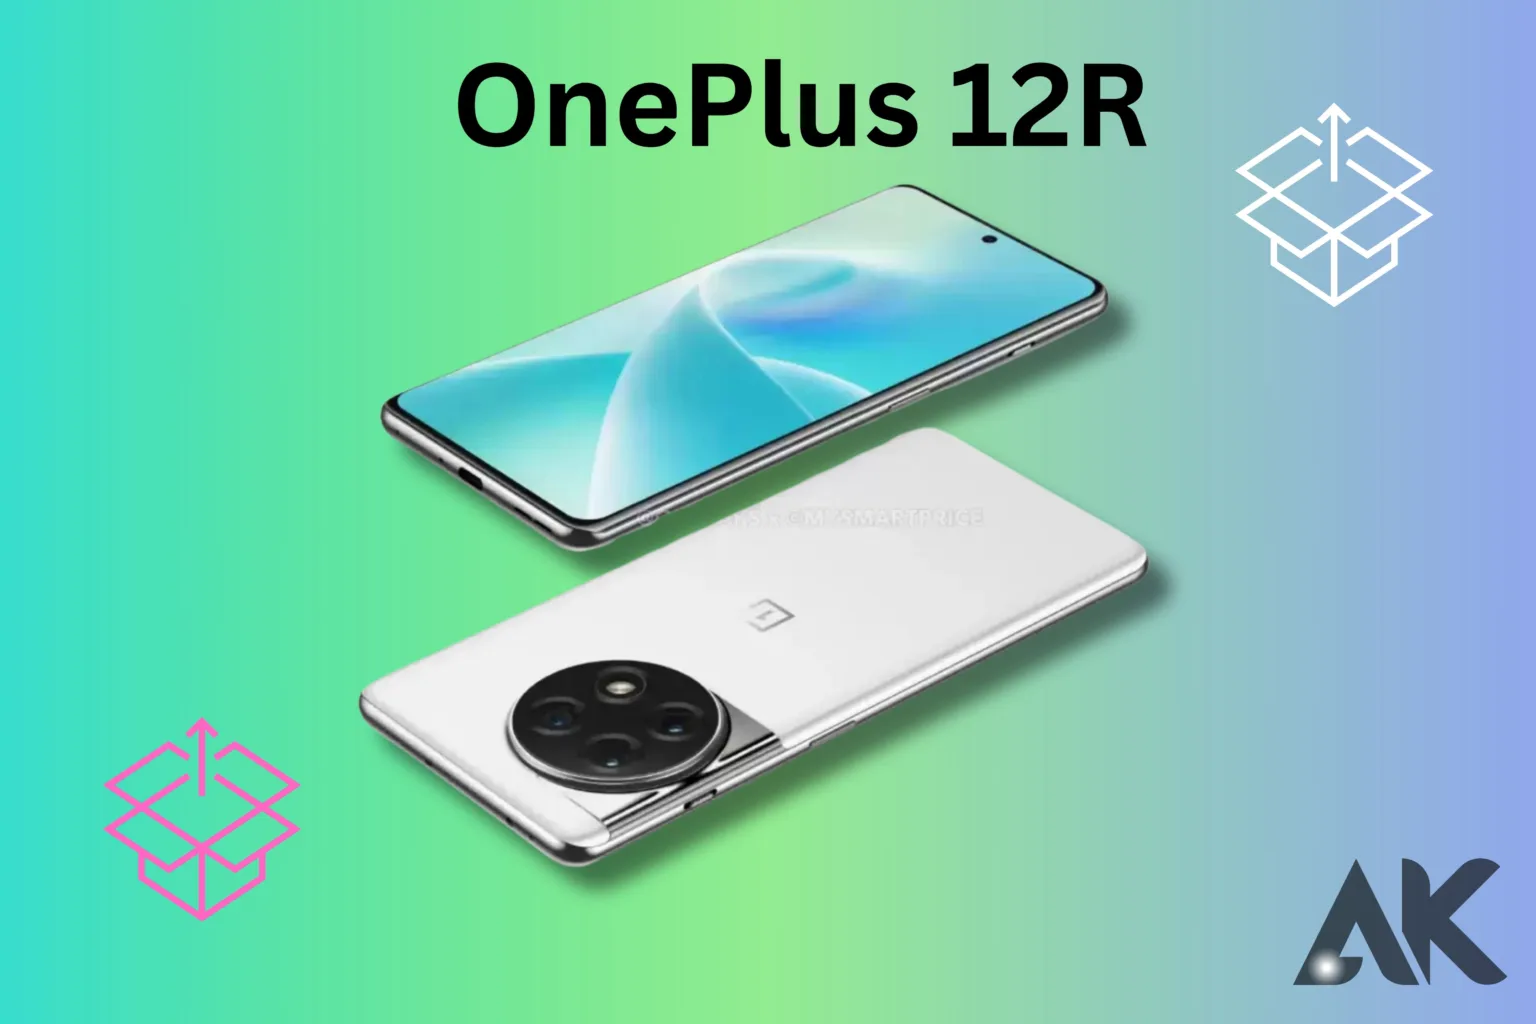 OnePlus 12R specs